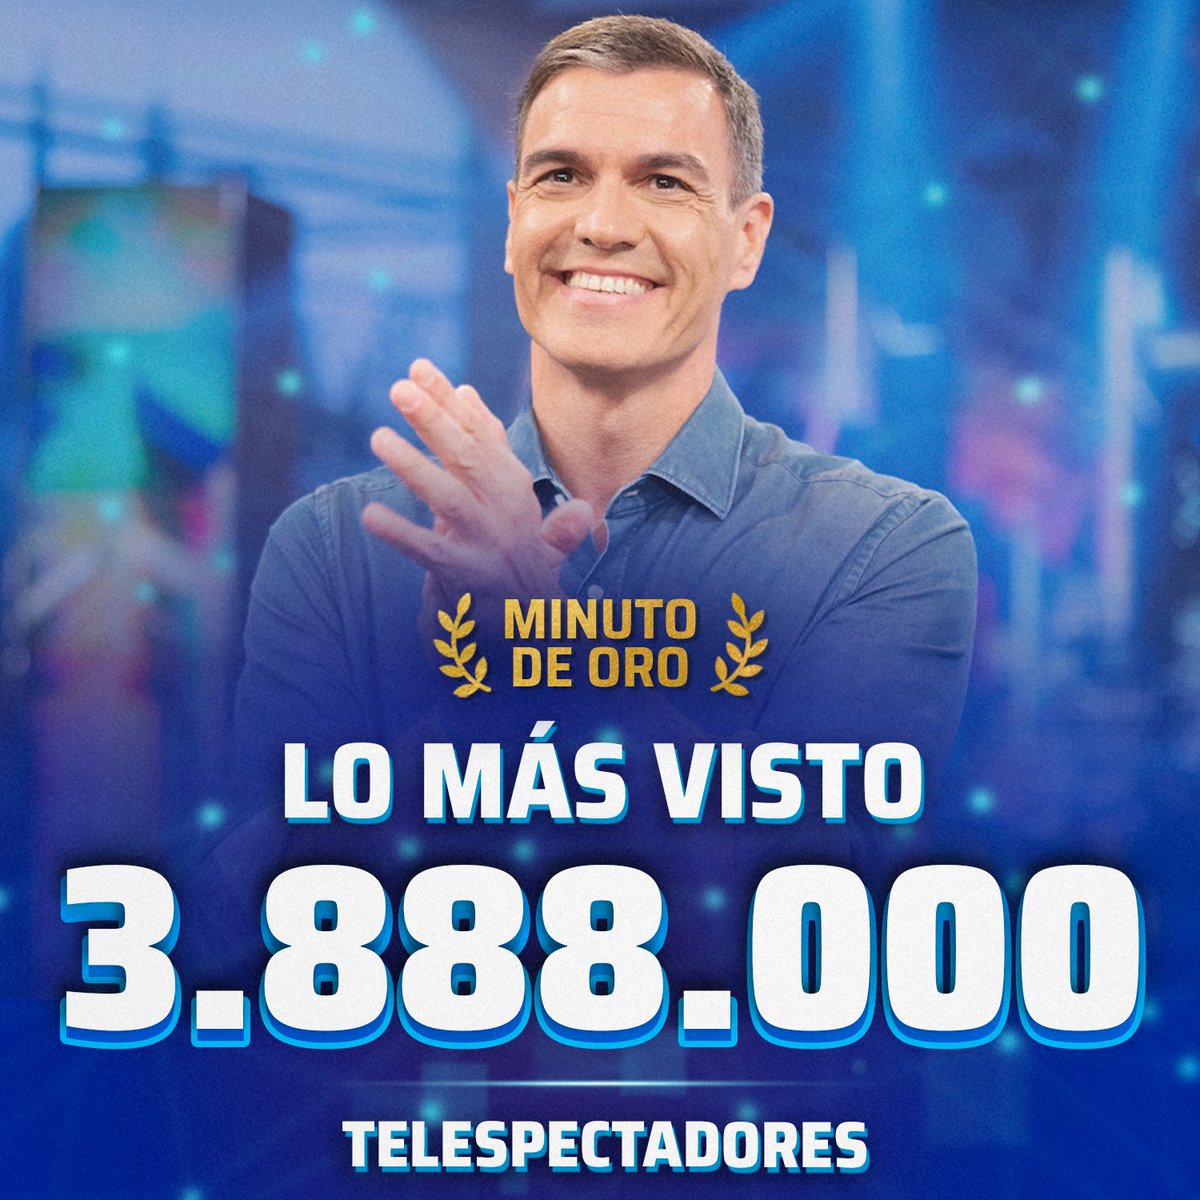 Anoche nos convertimos en LO MÁS VISTO y MINUTO DE ORO con 3.888.000 telespectadores ¡GRACIAS! ❤️ #audiencias #PedroSánchezEH